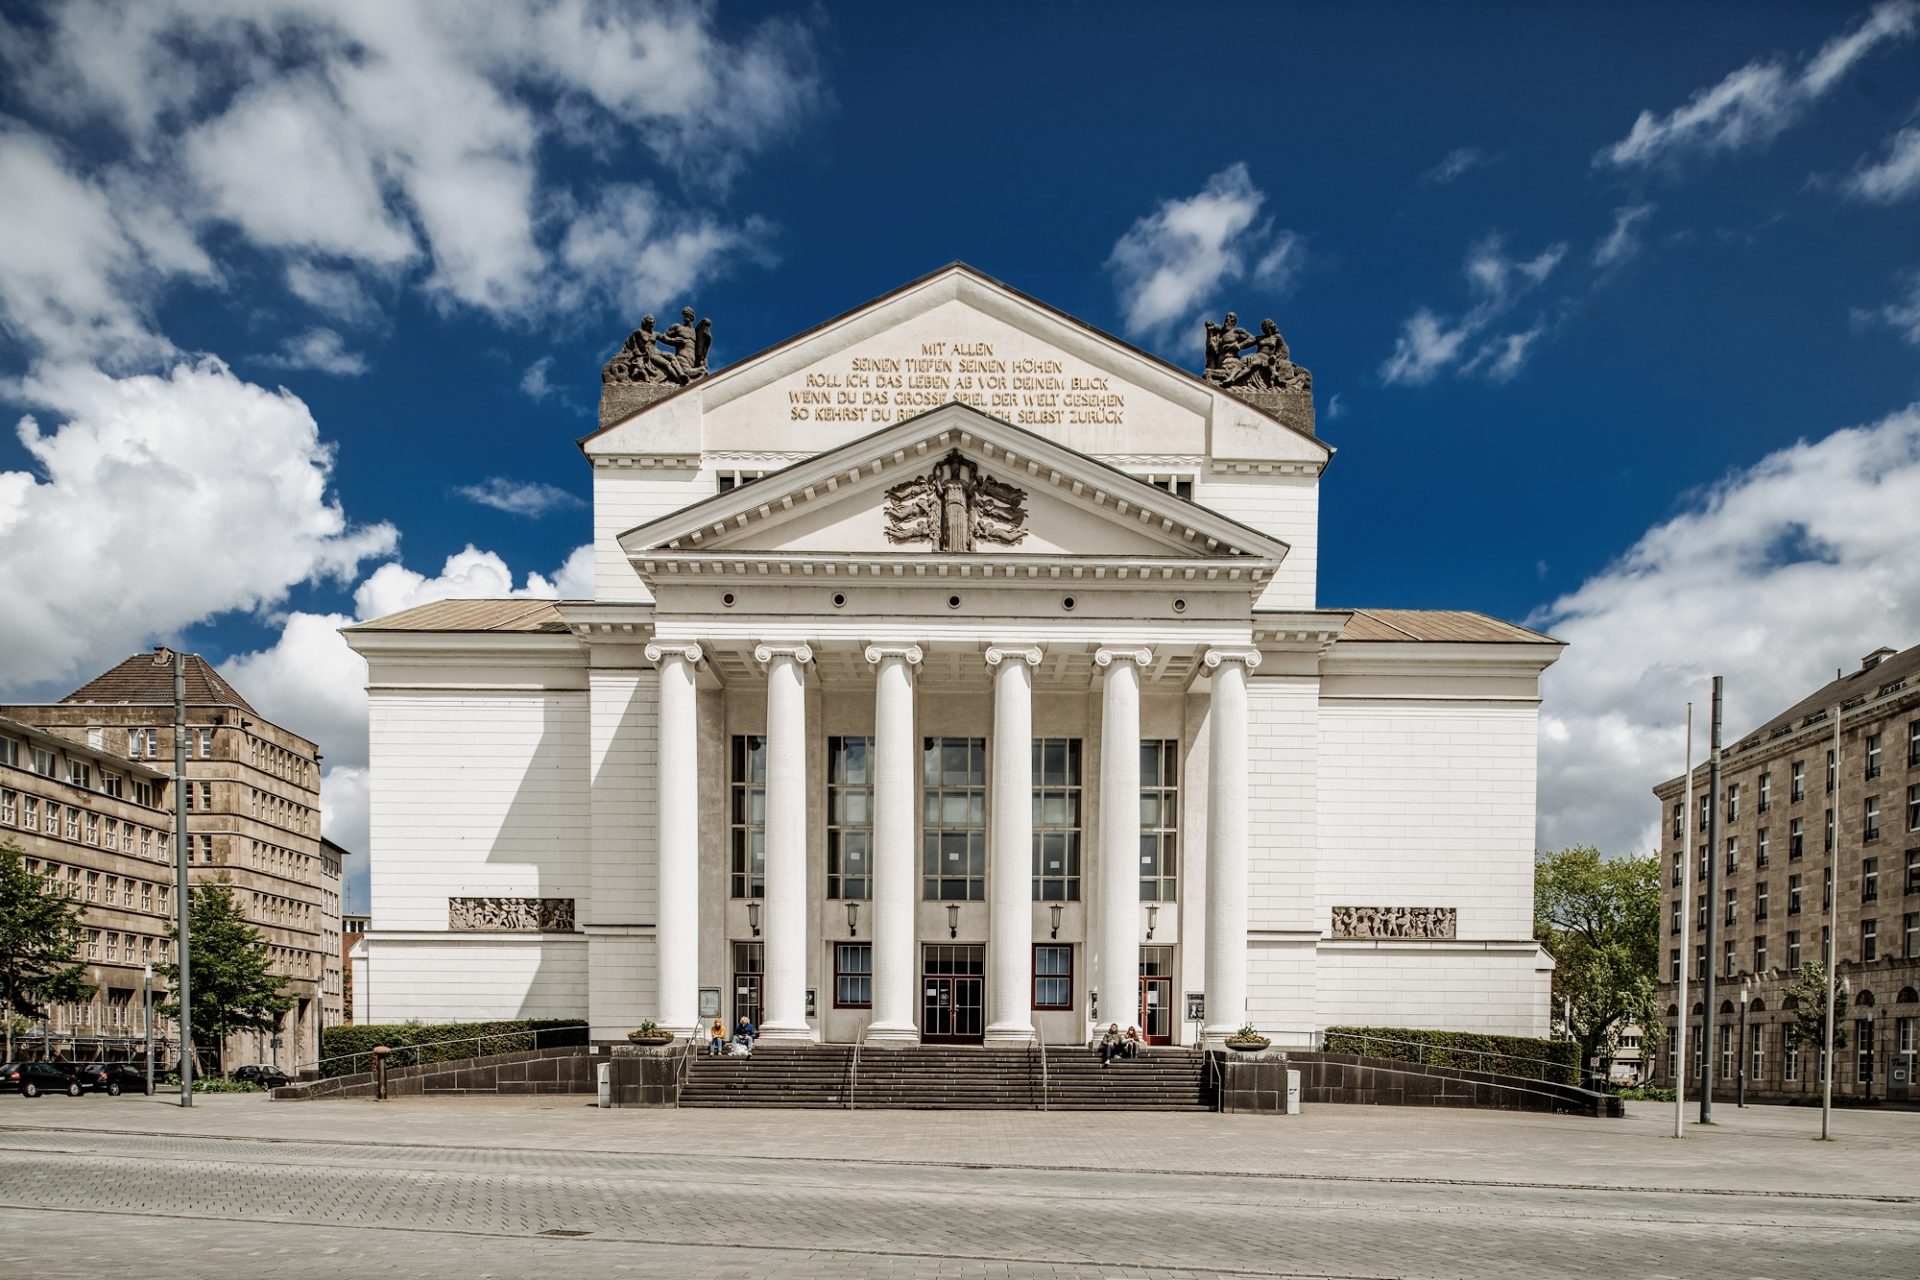 Das Stadttheater Duisburg wurde ursprünglich 1911/12 errichtet und nach dem Zweiten Weltkrieg wieder aufgebaut. Prägend sind seine sechs Säulen und ein Schiller-Zitat auf dem Giebel. Foto: Andreas Endermann